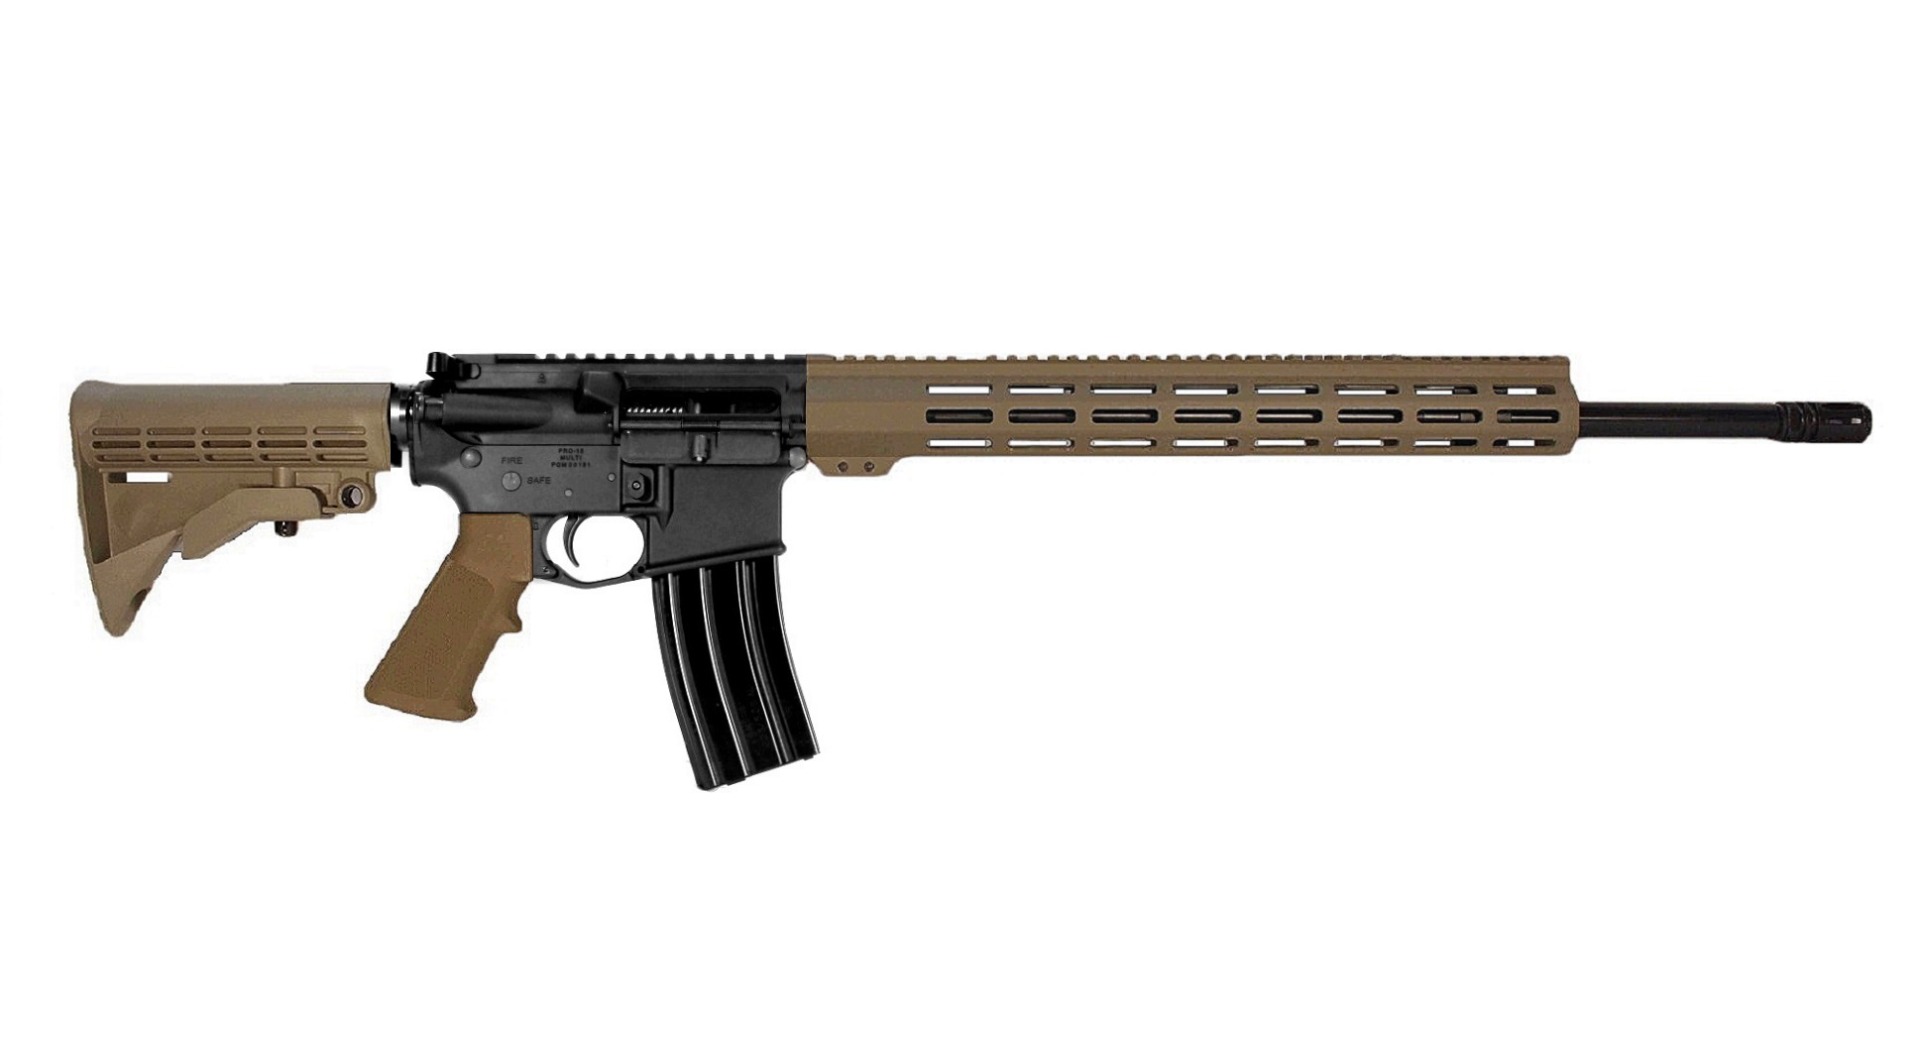 20 inch 6.8 SPC II AR-15 Rifle in BLK/FDE